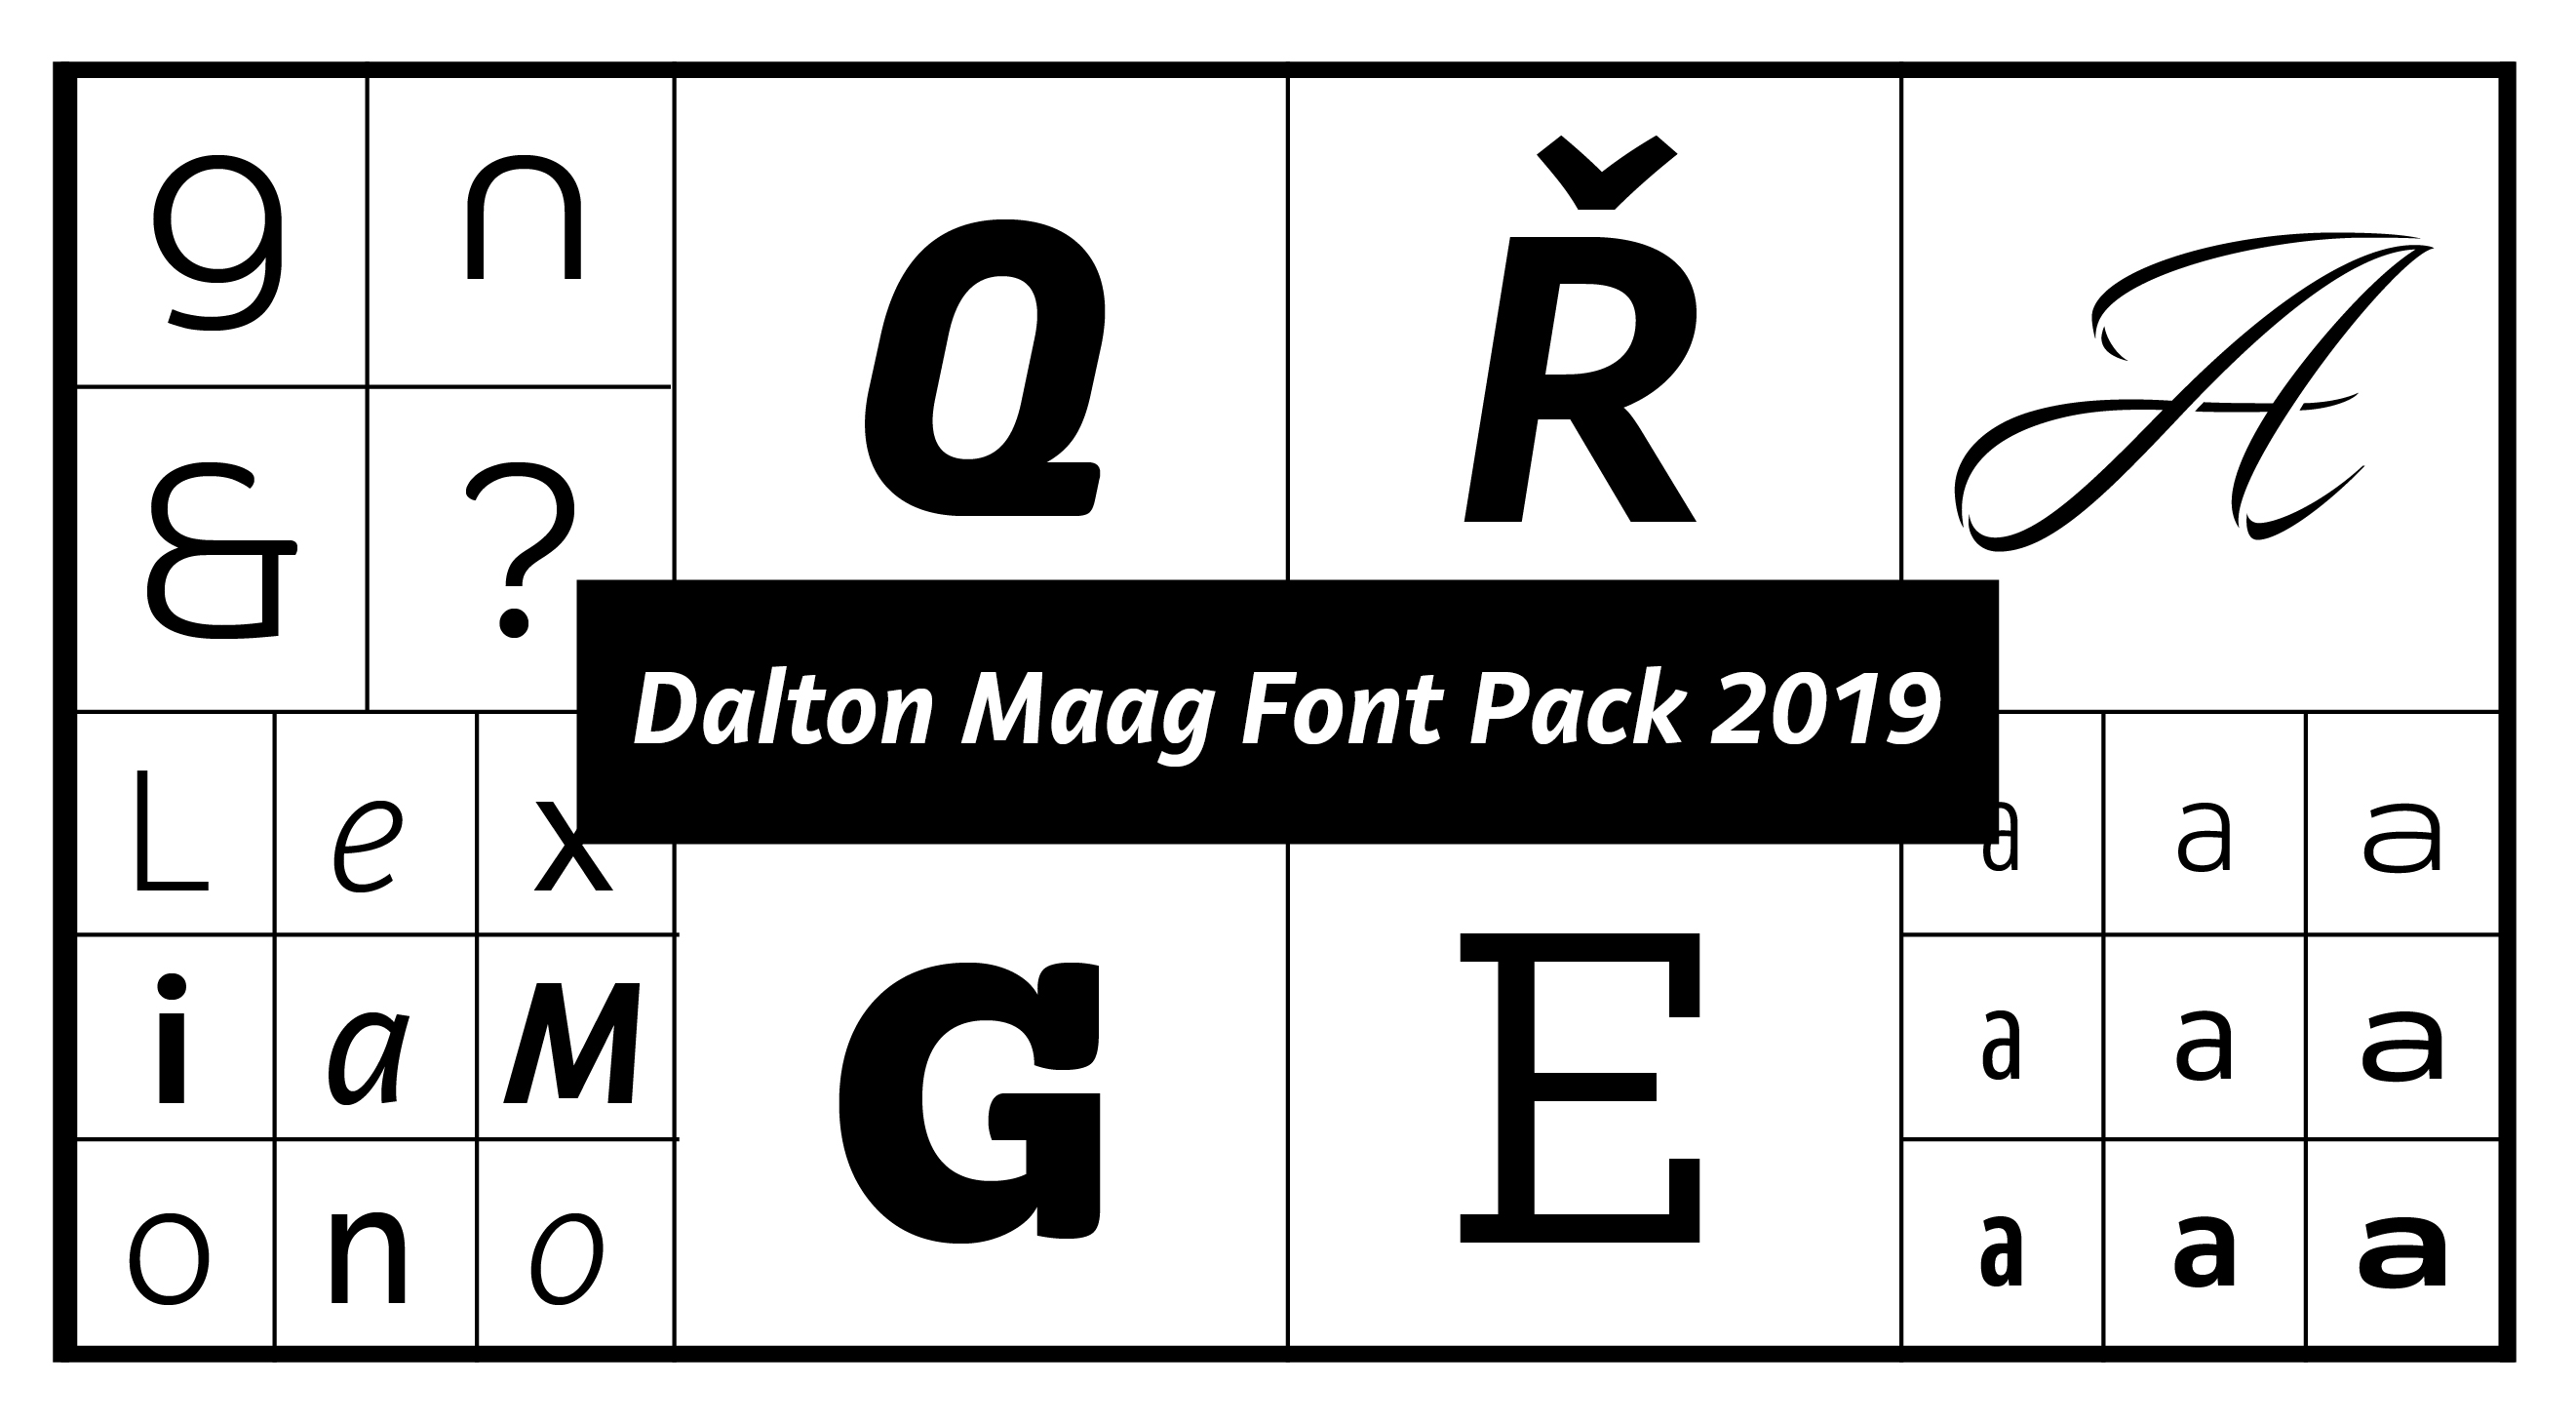 Dalton Maag Font Pack 2019Dalton Maag Font Pack 2019